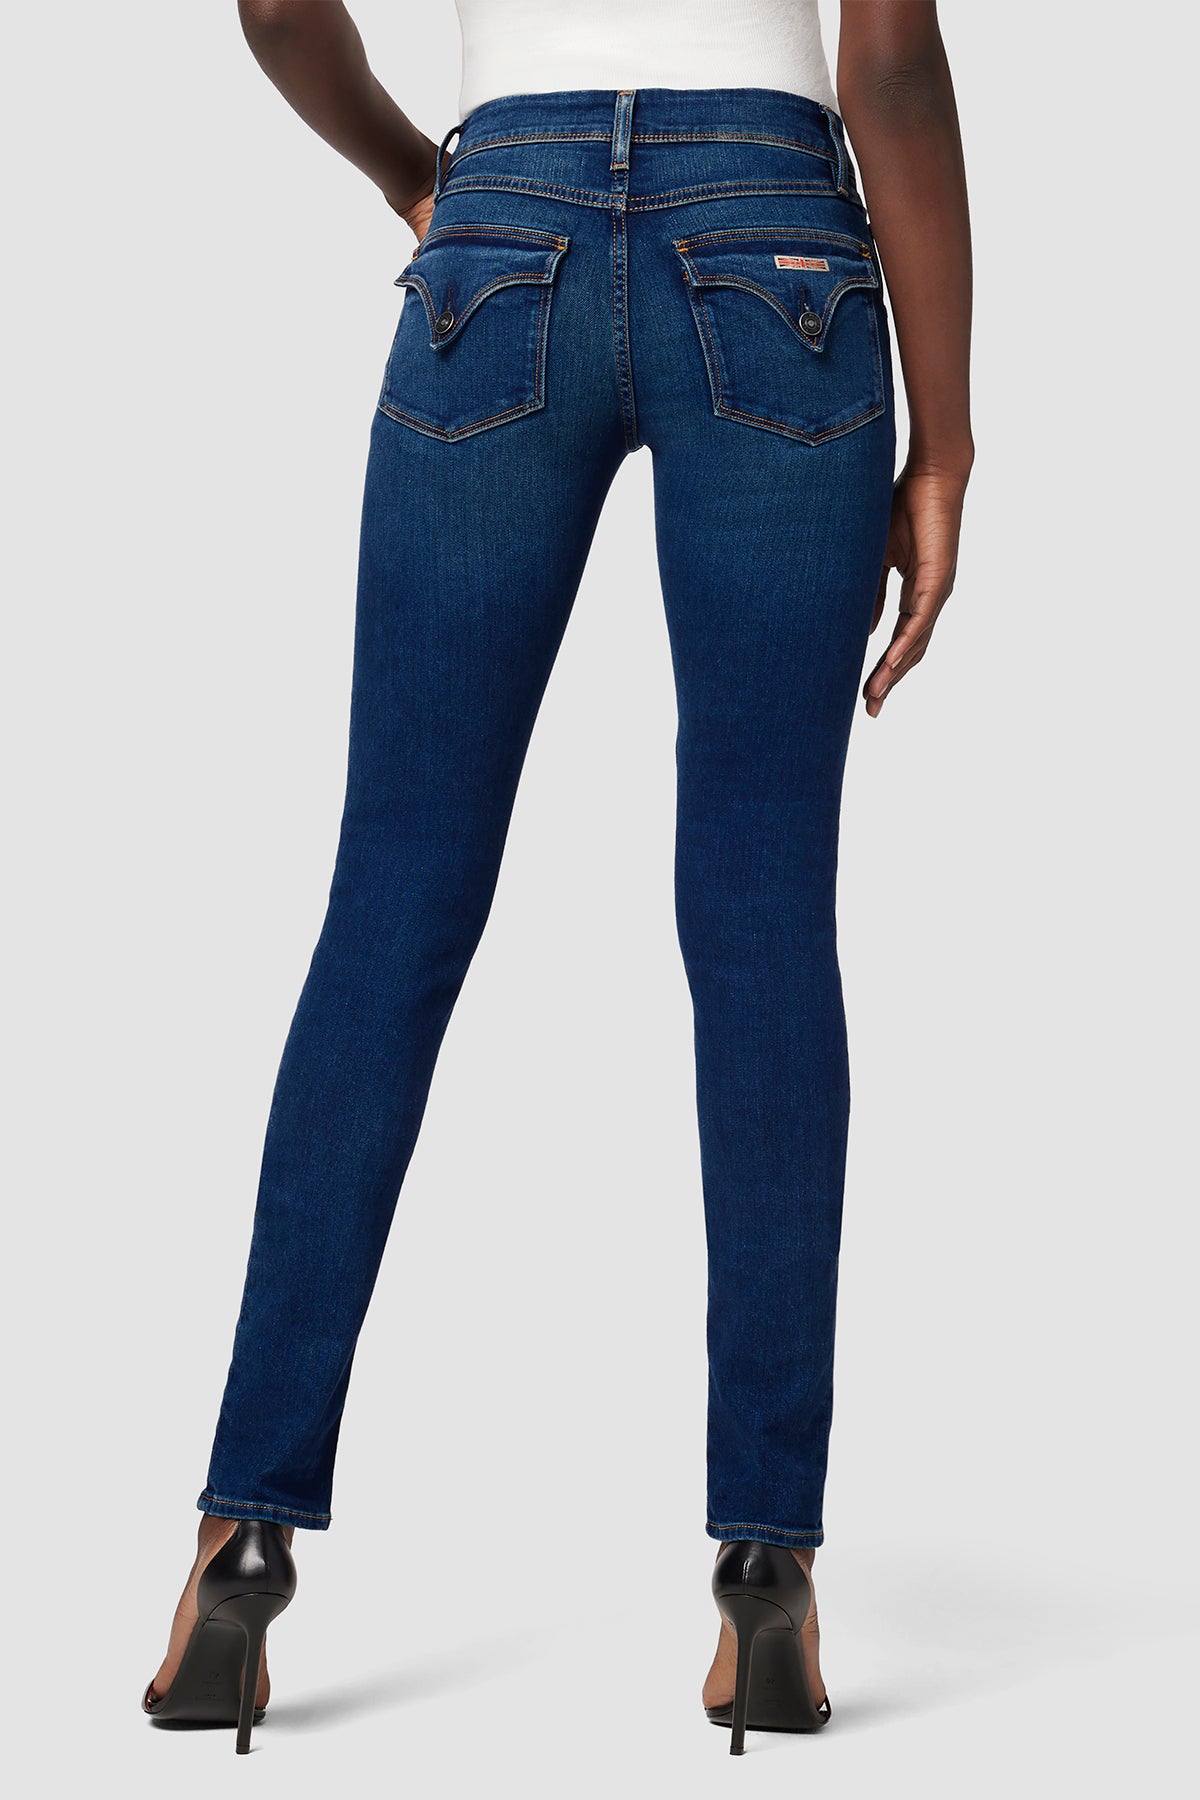 Collin Mid-Rise Skinny Supermodel Jean